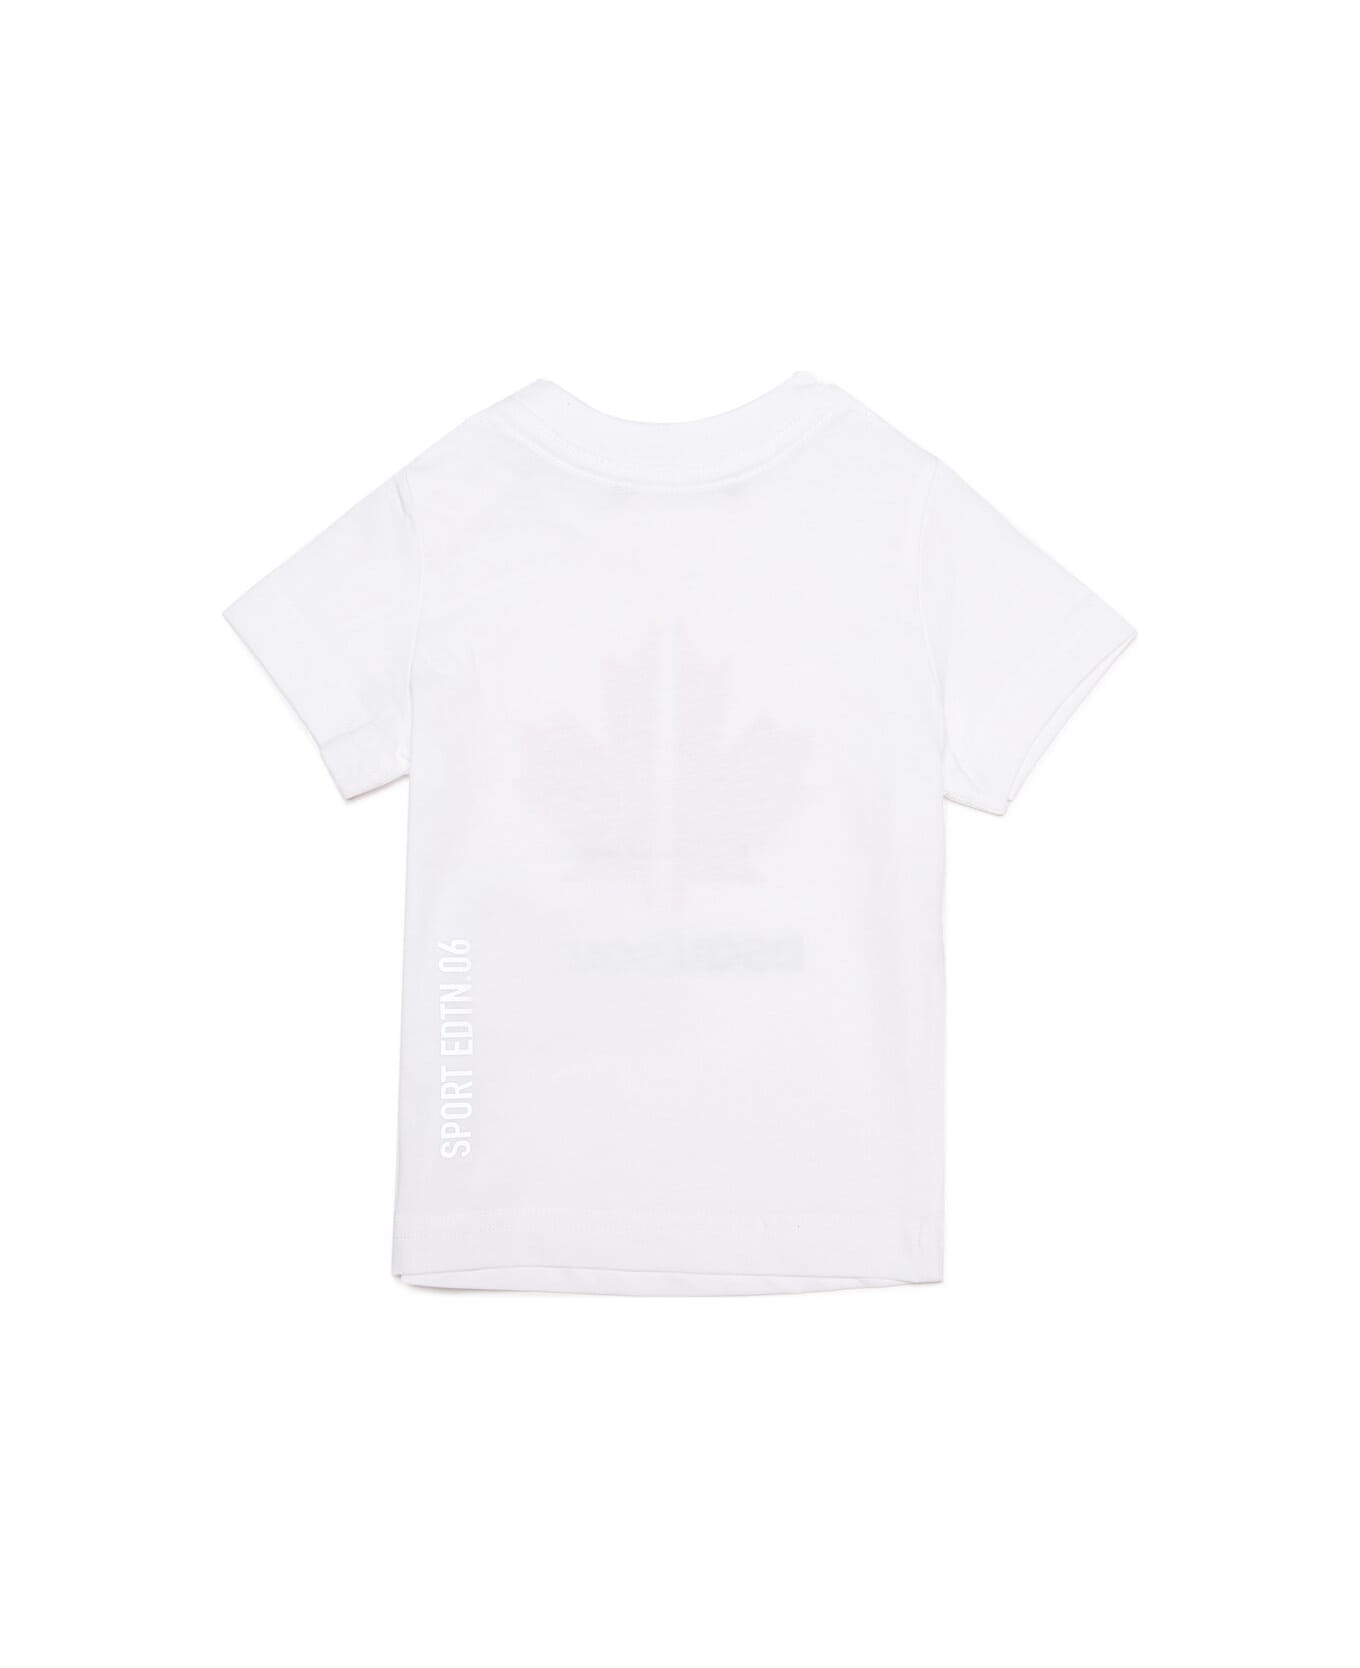 Dsquared2 D2t823b T-shirt Dsquared - White